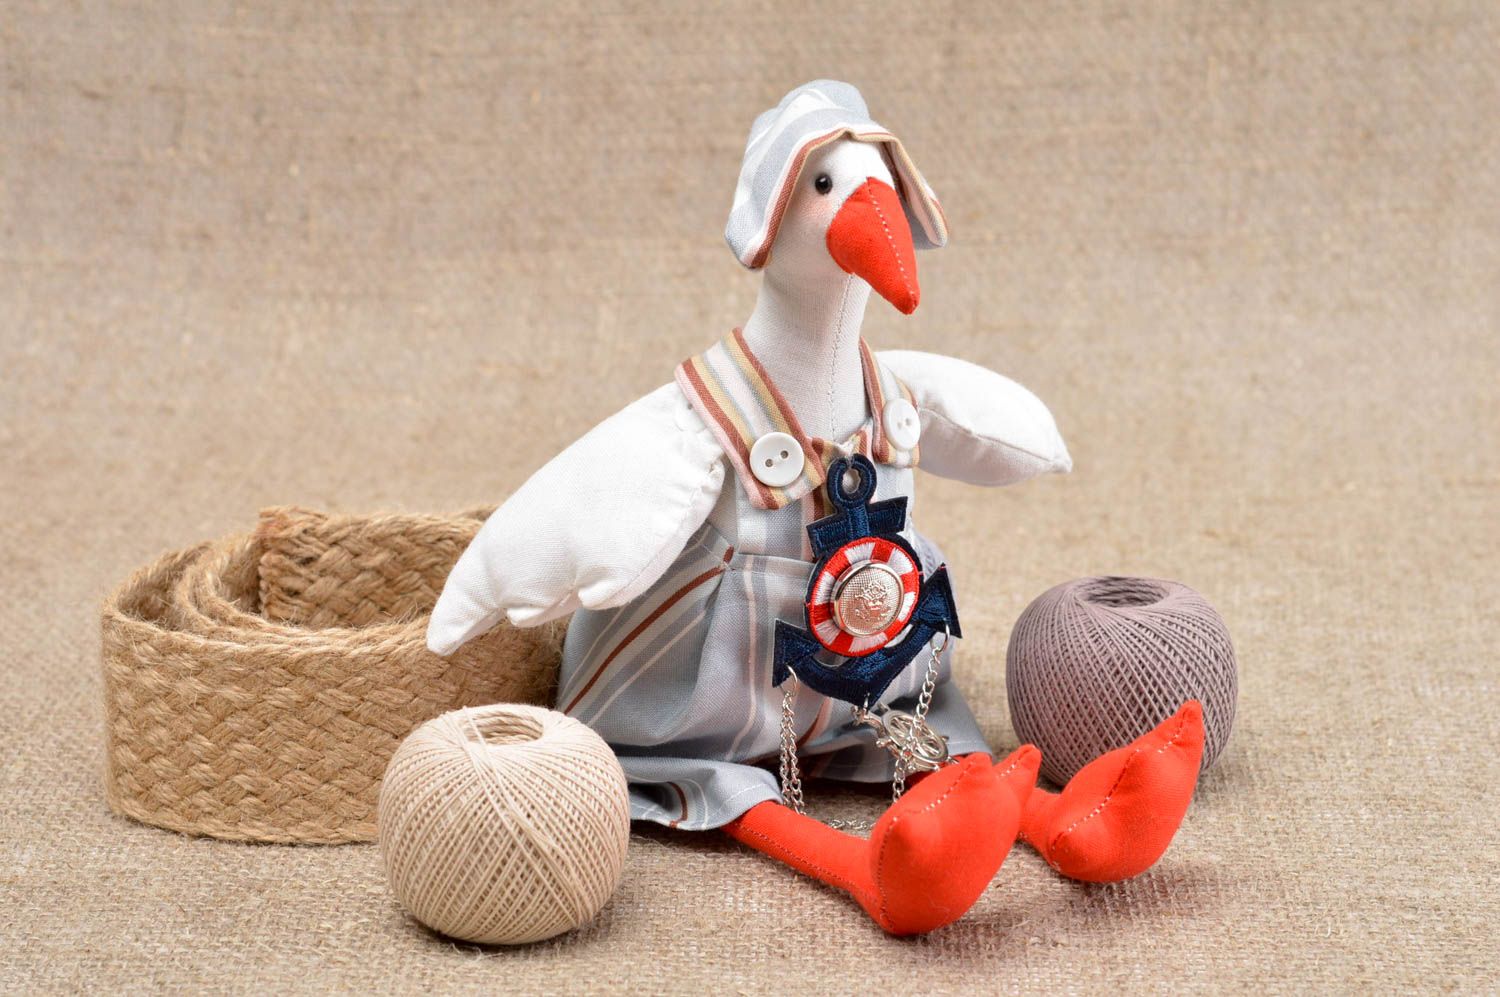 Игрушка утка ручной работы детская игрушка красивая мягкая игрушка для детей фото 1